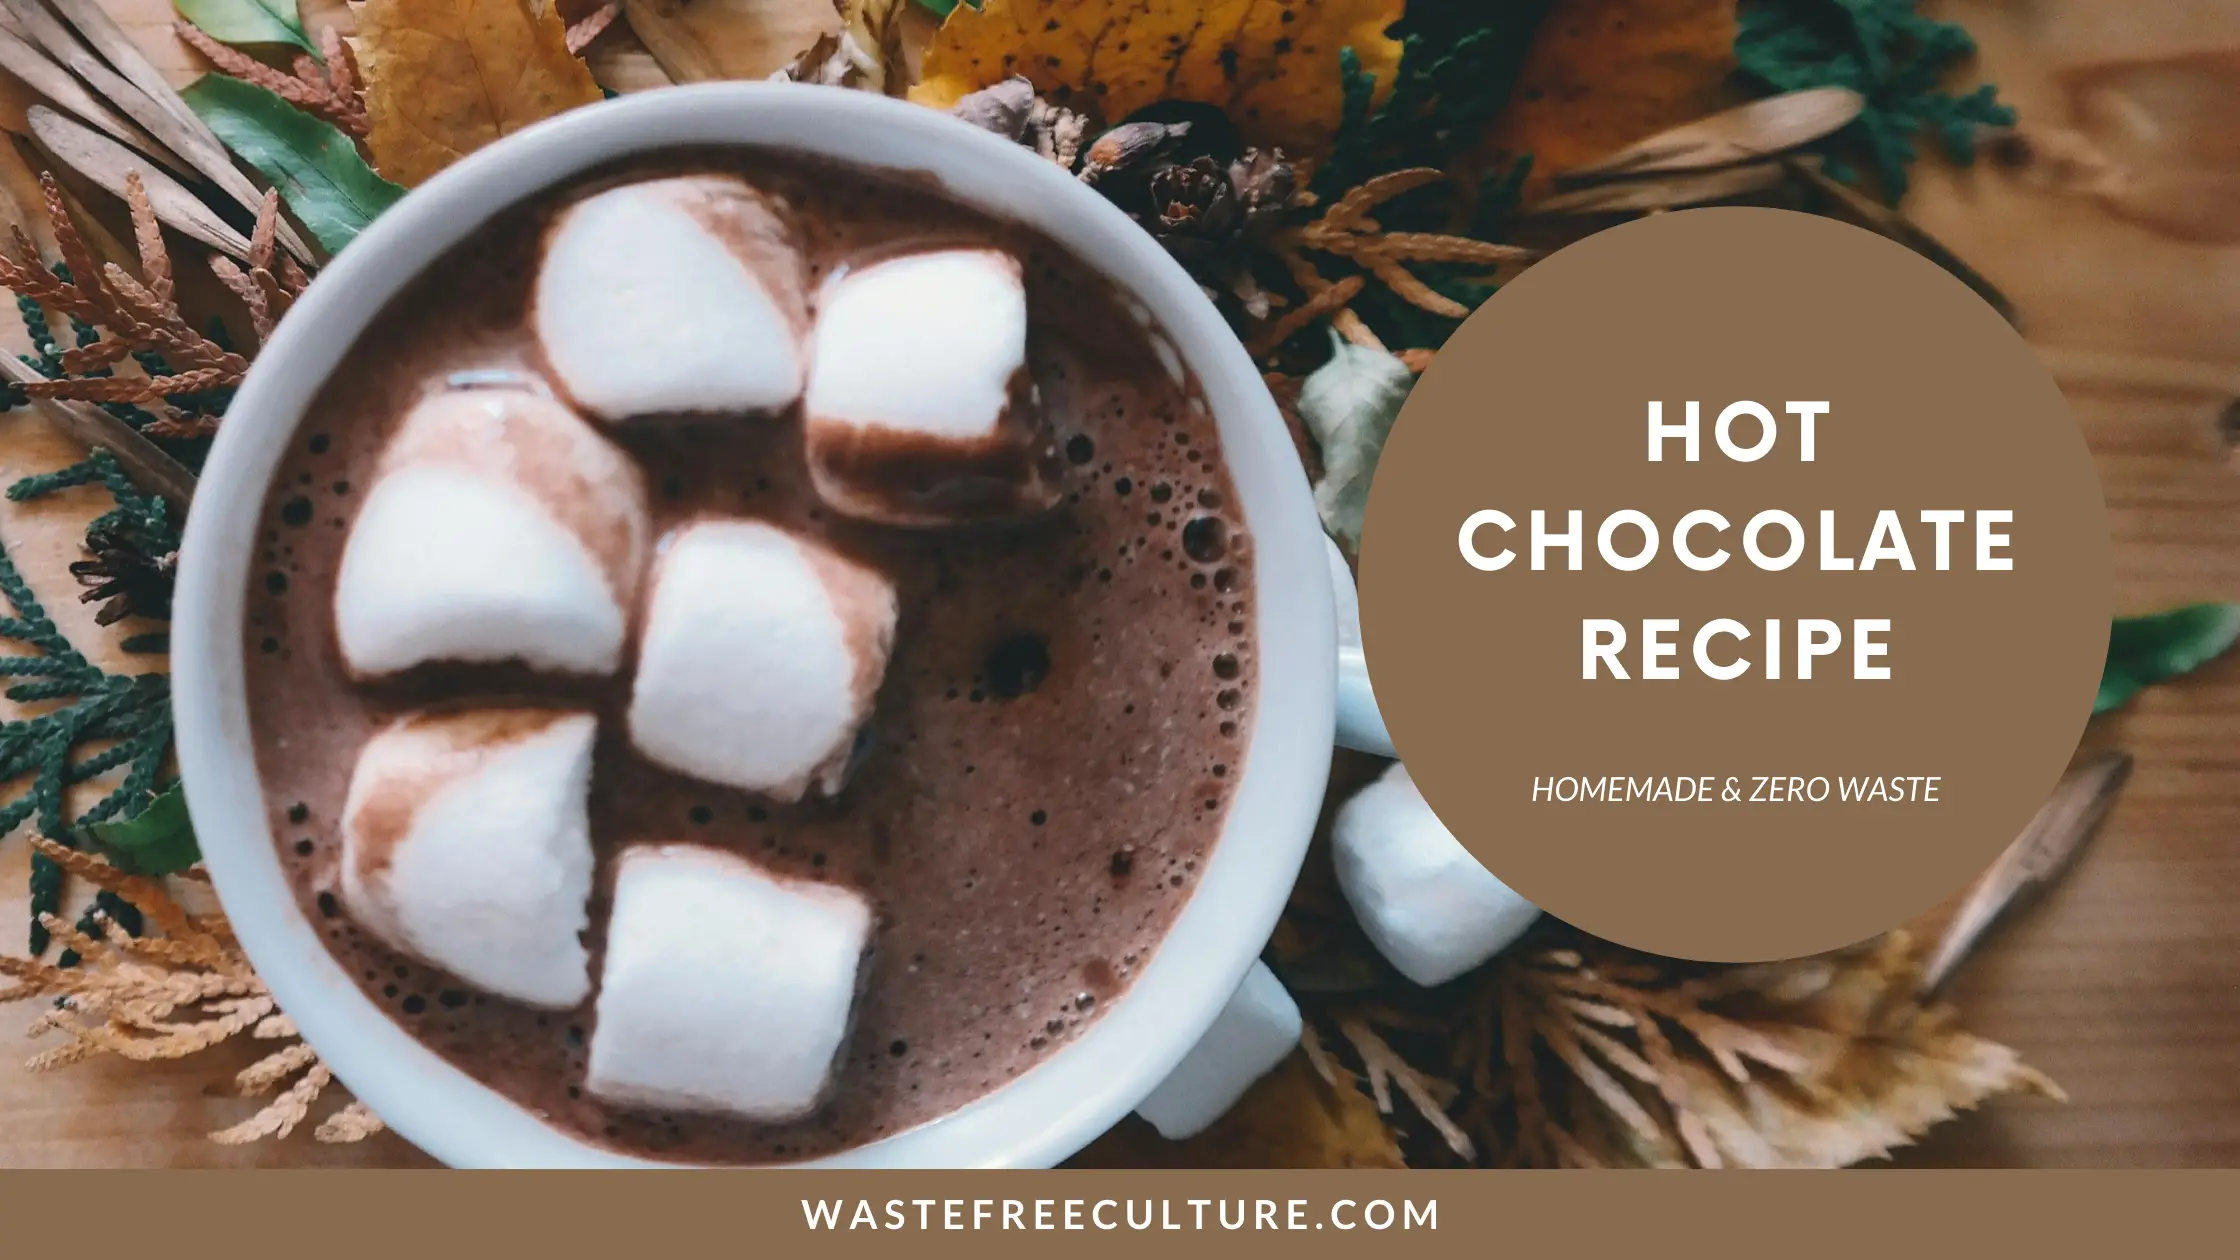 Hot Chocolate Recipe - Homemade & Zero Waste